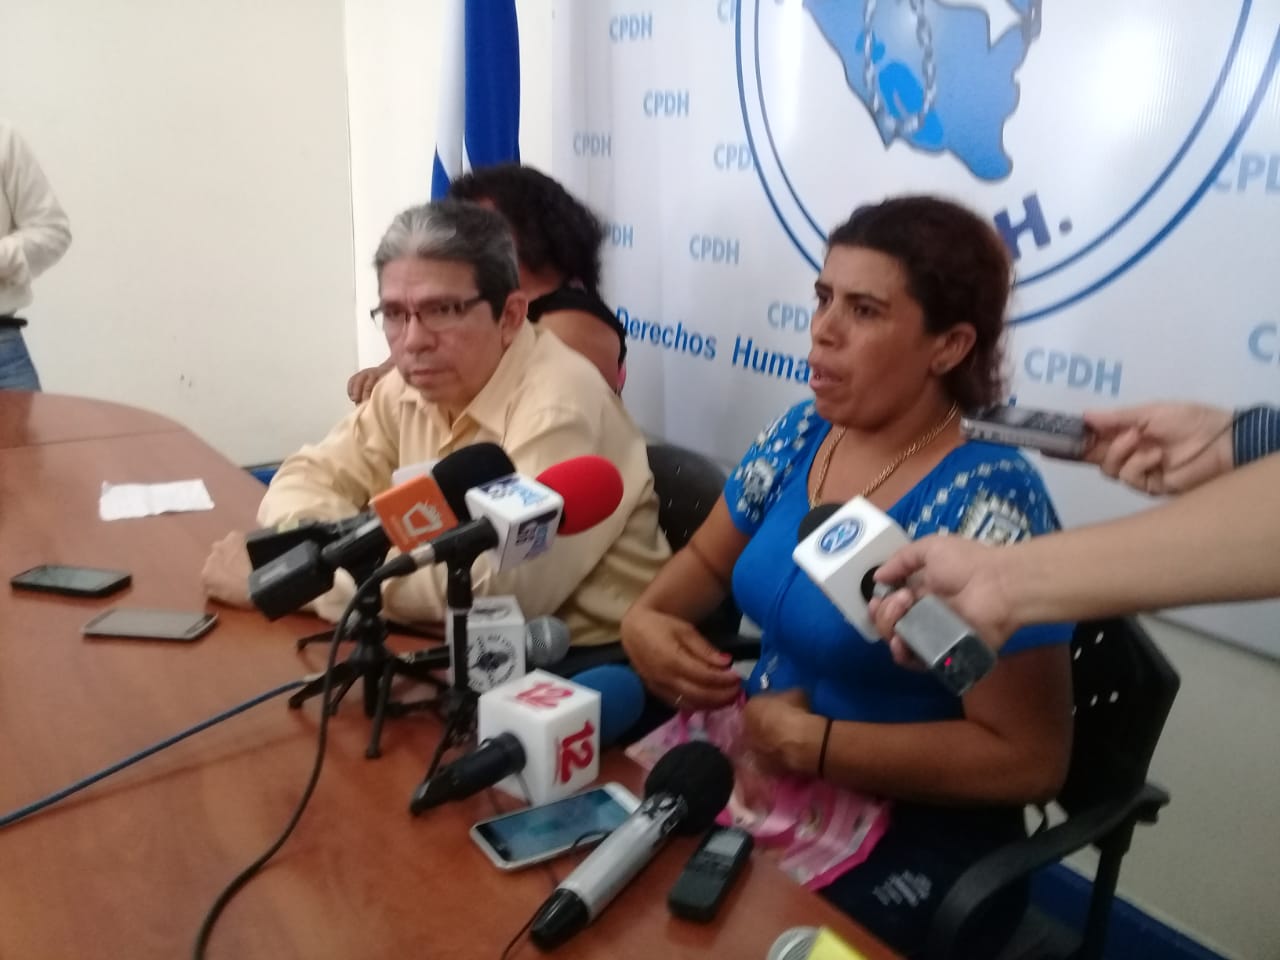 Antonia Cruz Calderón denunció ante la CPDH el calvario que sufrió su hermano Brayan. Foto: Héctor Rosales